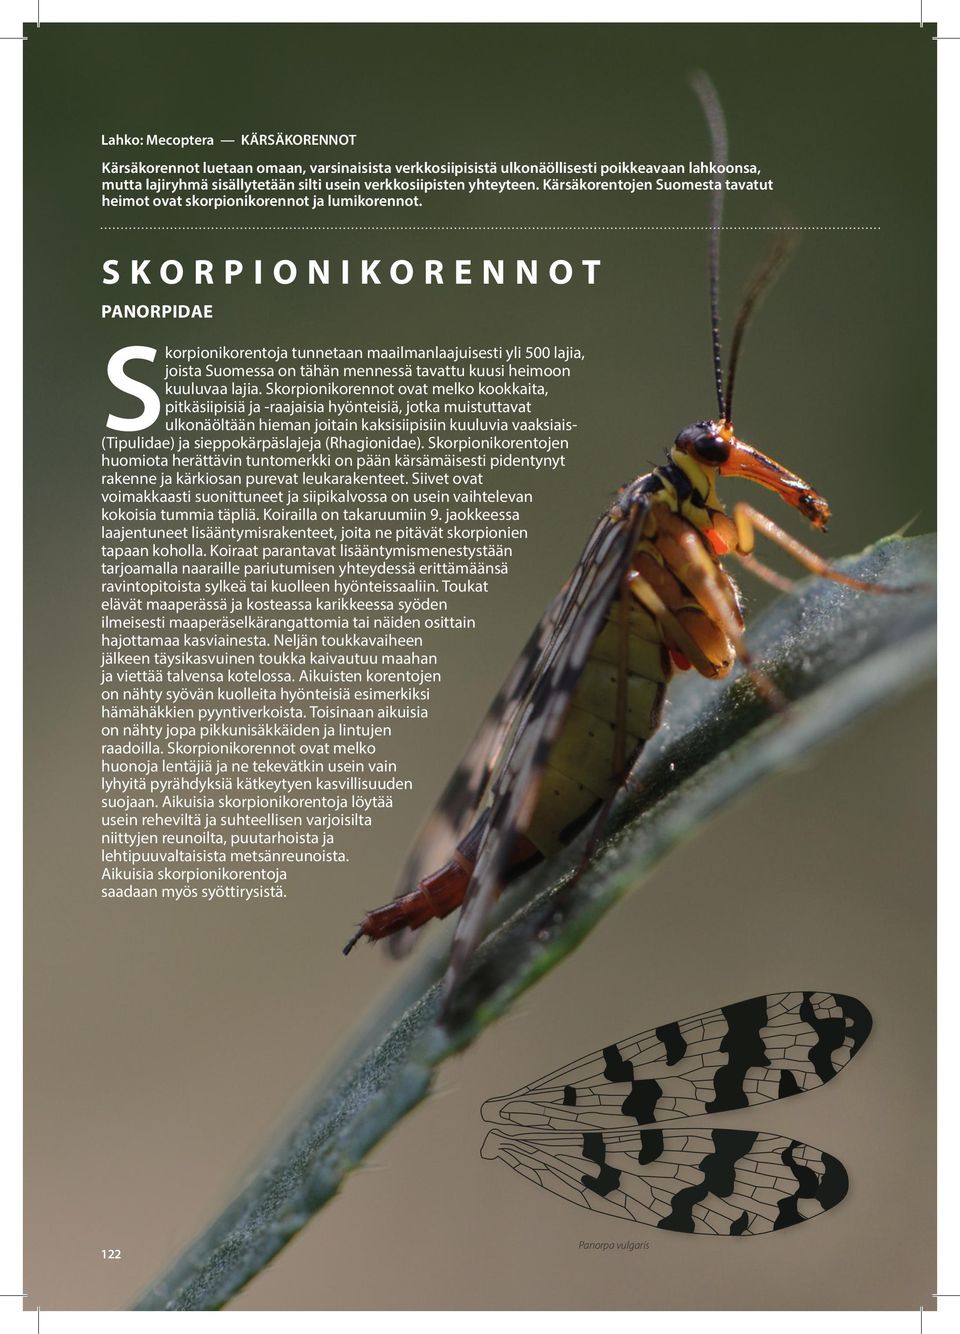 SKORPIONIKORENNO PANORPIDAE Skorpionikorentoja tunnetaan maailmanlaajuisesti yli 500 lajia, joista Suomessa on tähän mennessä tavattu kuusi heimoon kuuluvaa lajia.